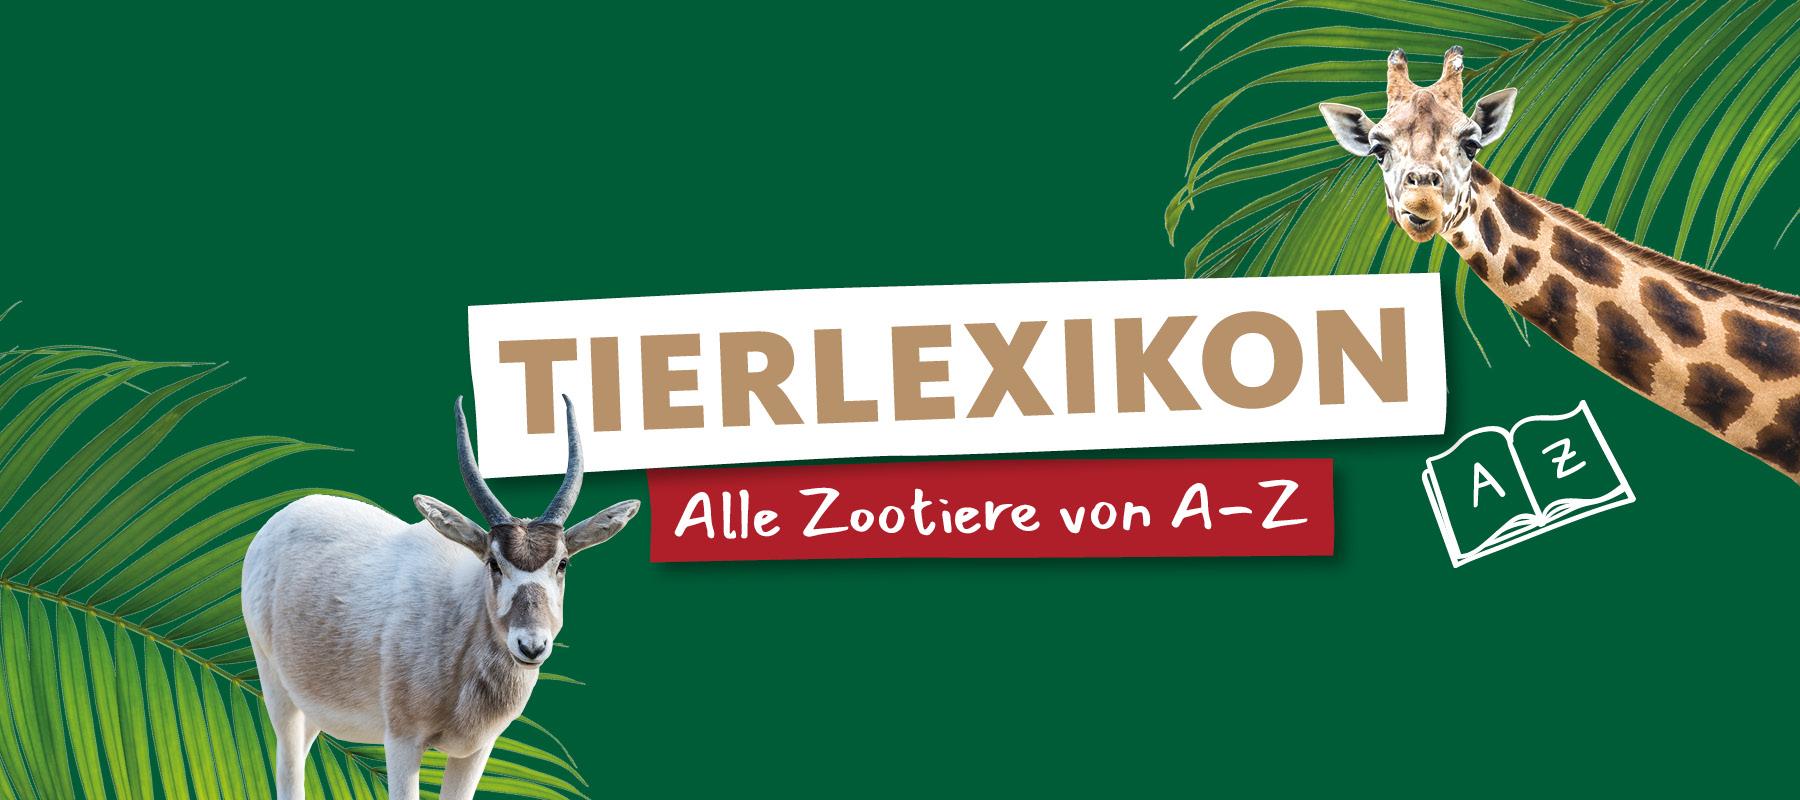 Alle Tiere im Erlebnis-Zoo Hannover von A-Z